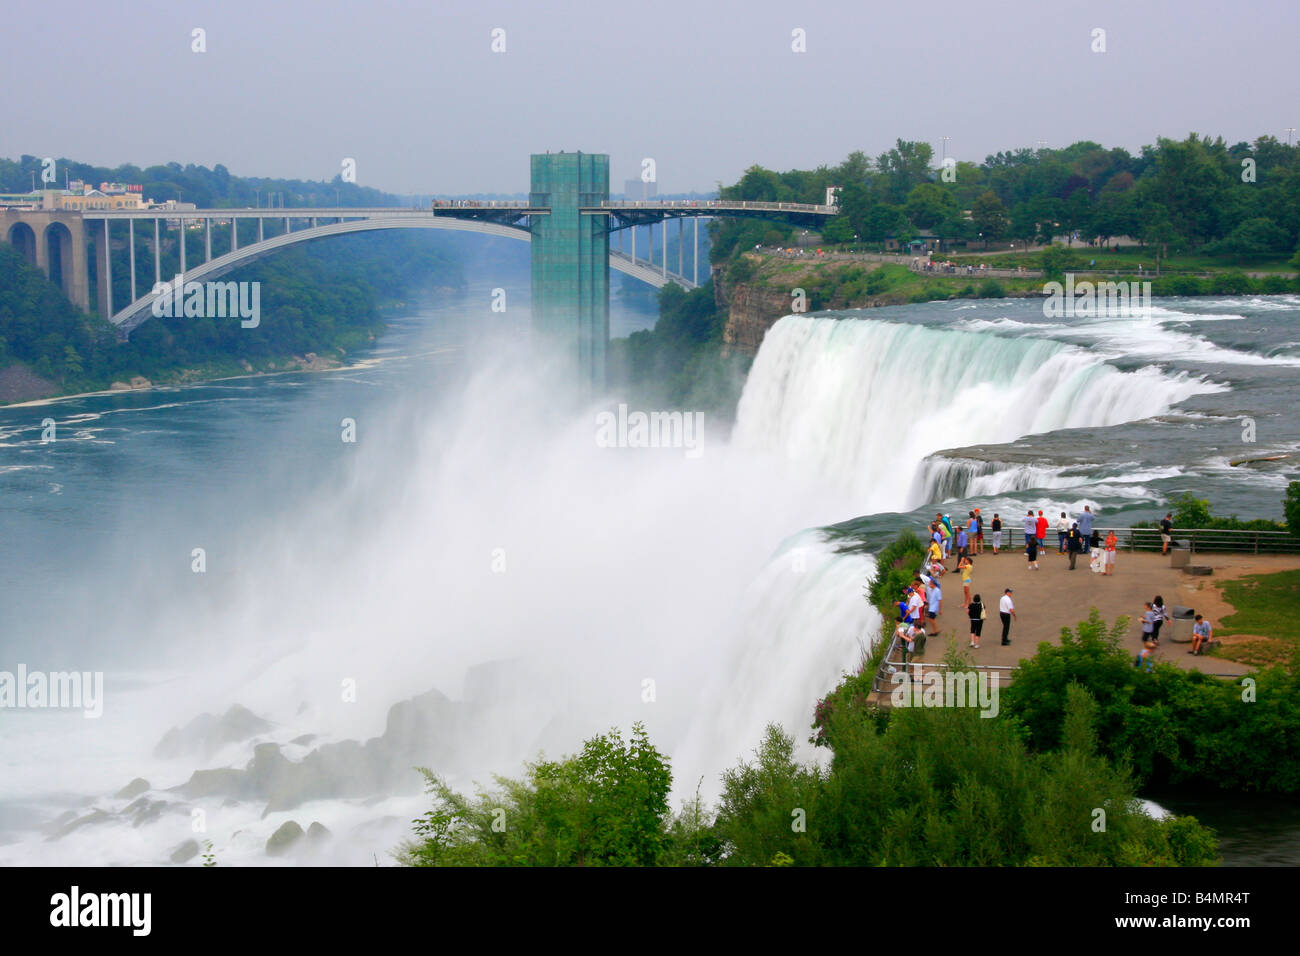 Agua de las cataratas del Niagara lado Americano NY cascada turistas naturaleza paisaje de verano en EE.UU. Foto de stock